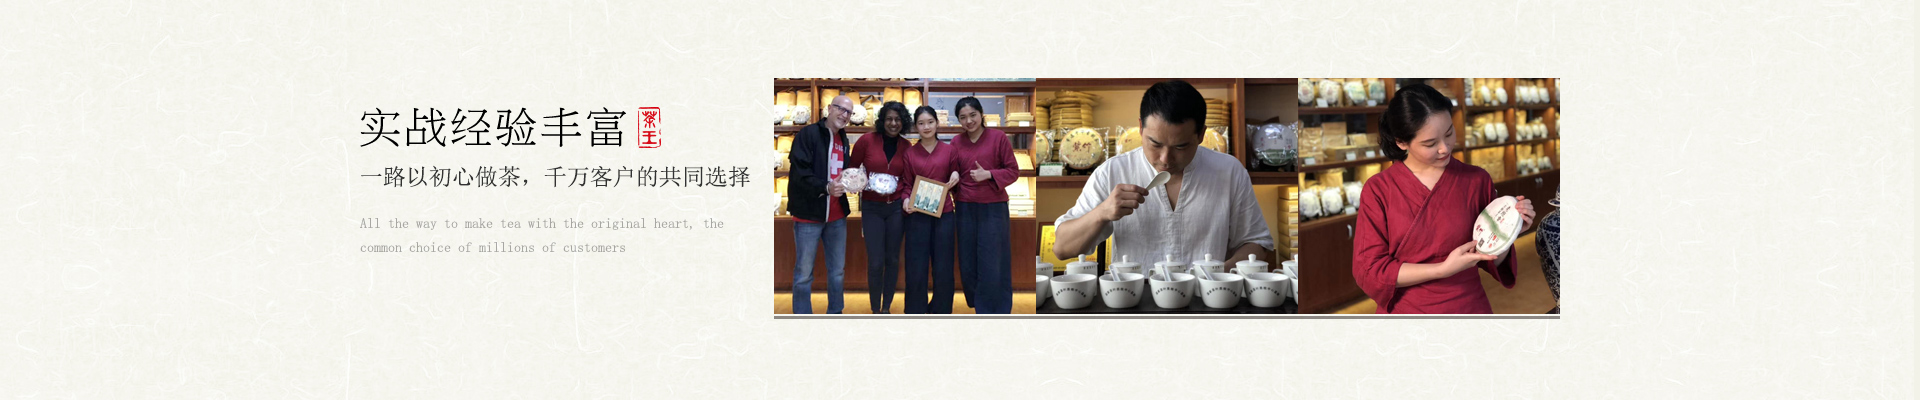 广东紫竹-一路以初心做茶，千万客户的共同选择